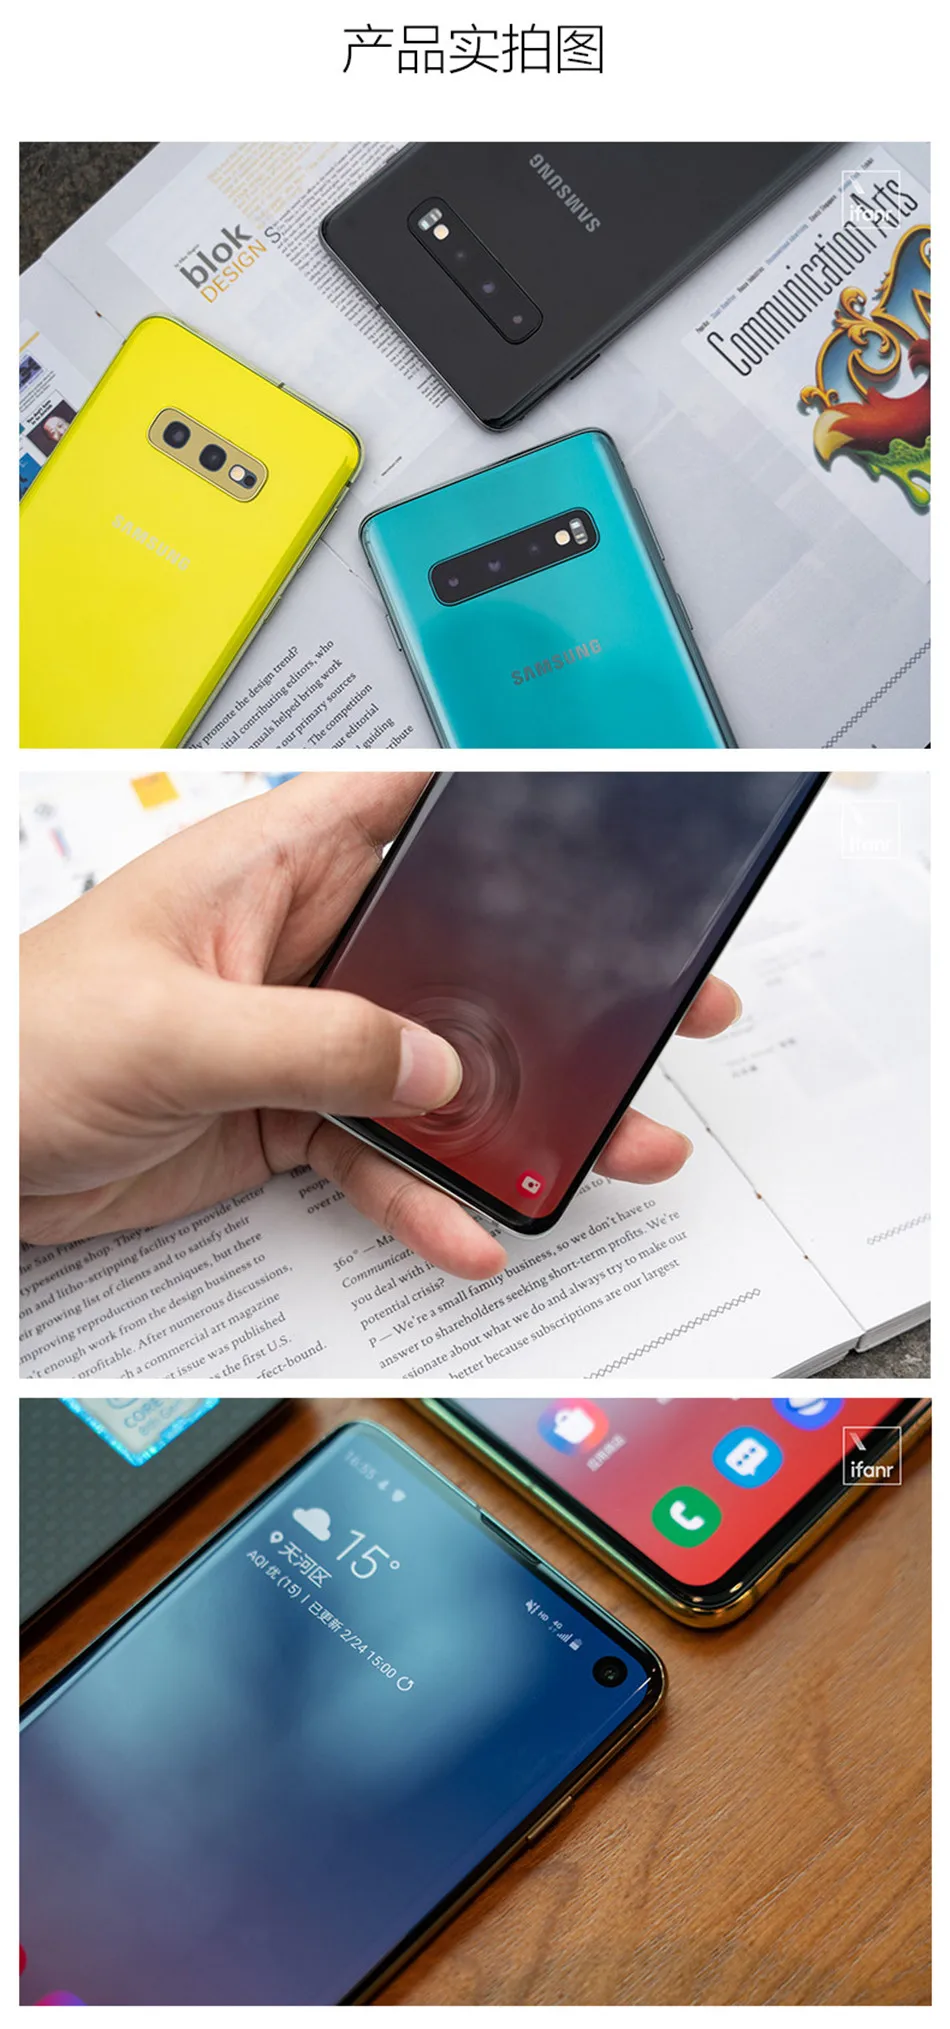 Мобильный телефон samsung Galaxy S10 G9730 с двумя sim-картами, 8 Гб ОЗУ, 128 ГБ/512 Гб ПЗУ, Восьмиядерный процессор 6,1 дюйма, 4 камеры Snapdragon 855 NFC